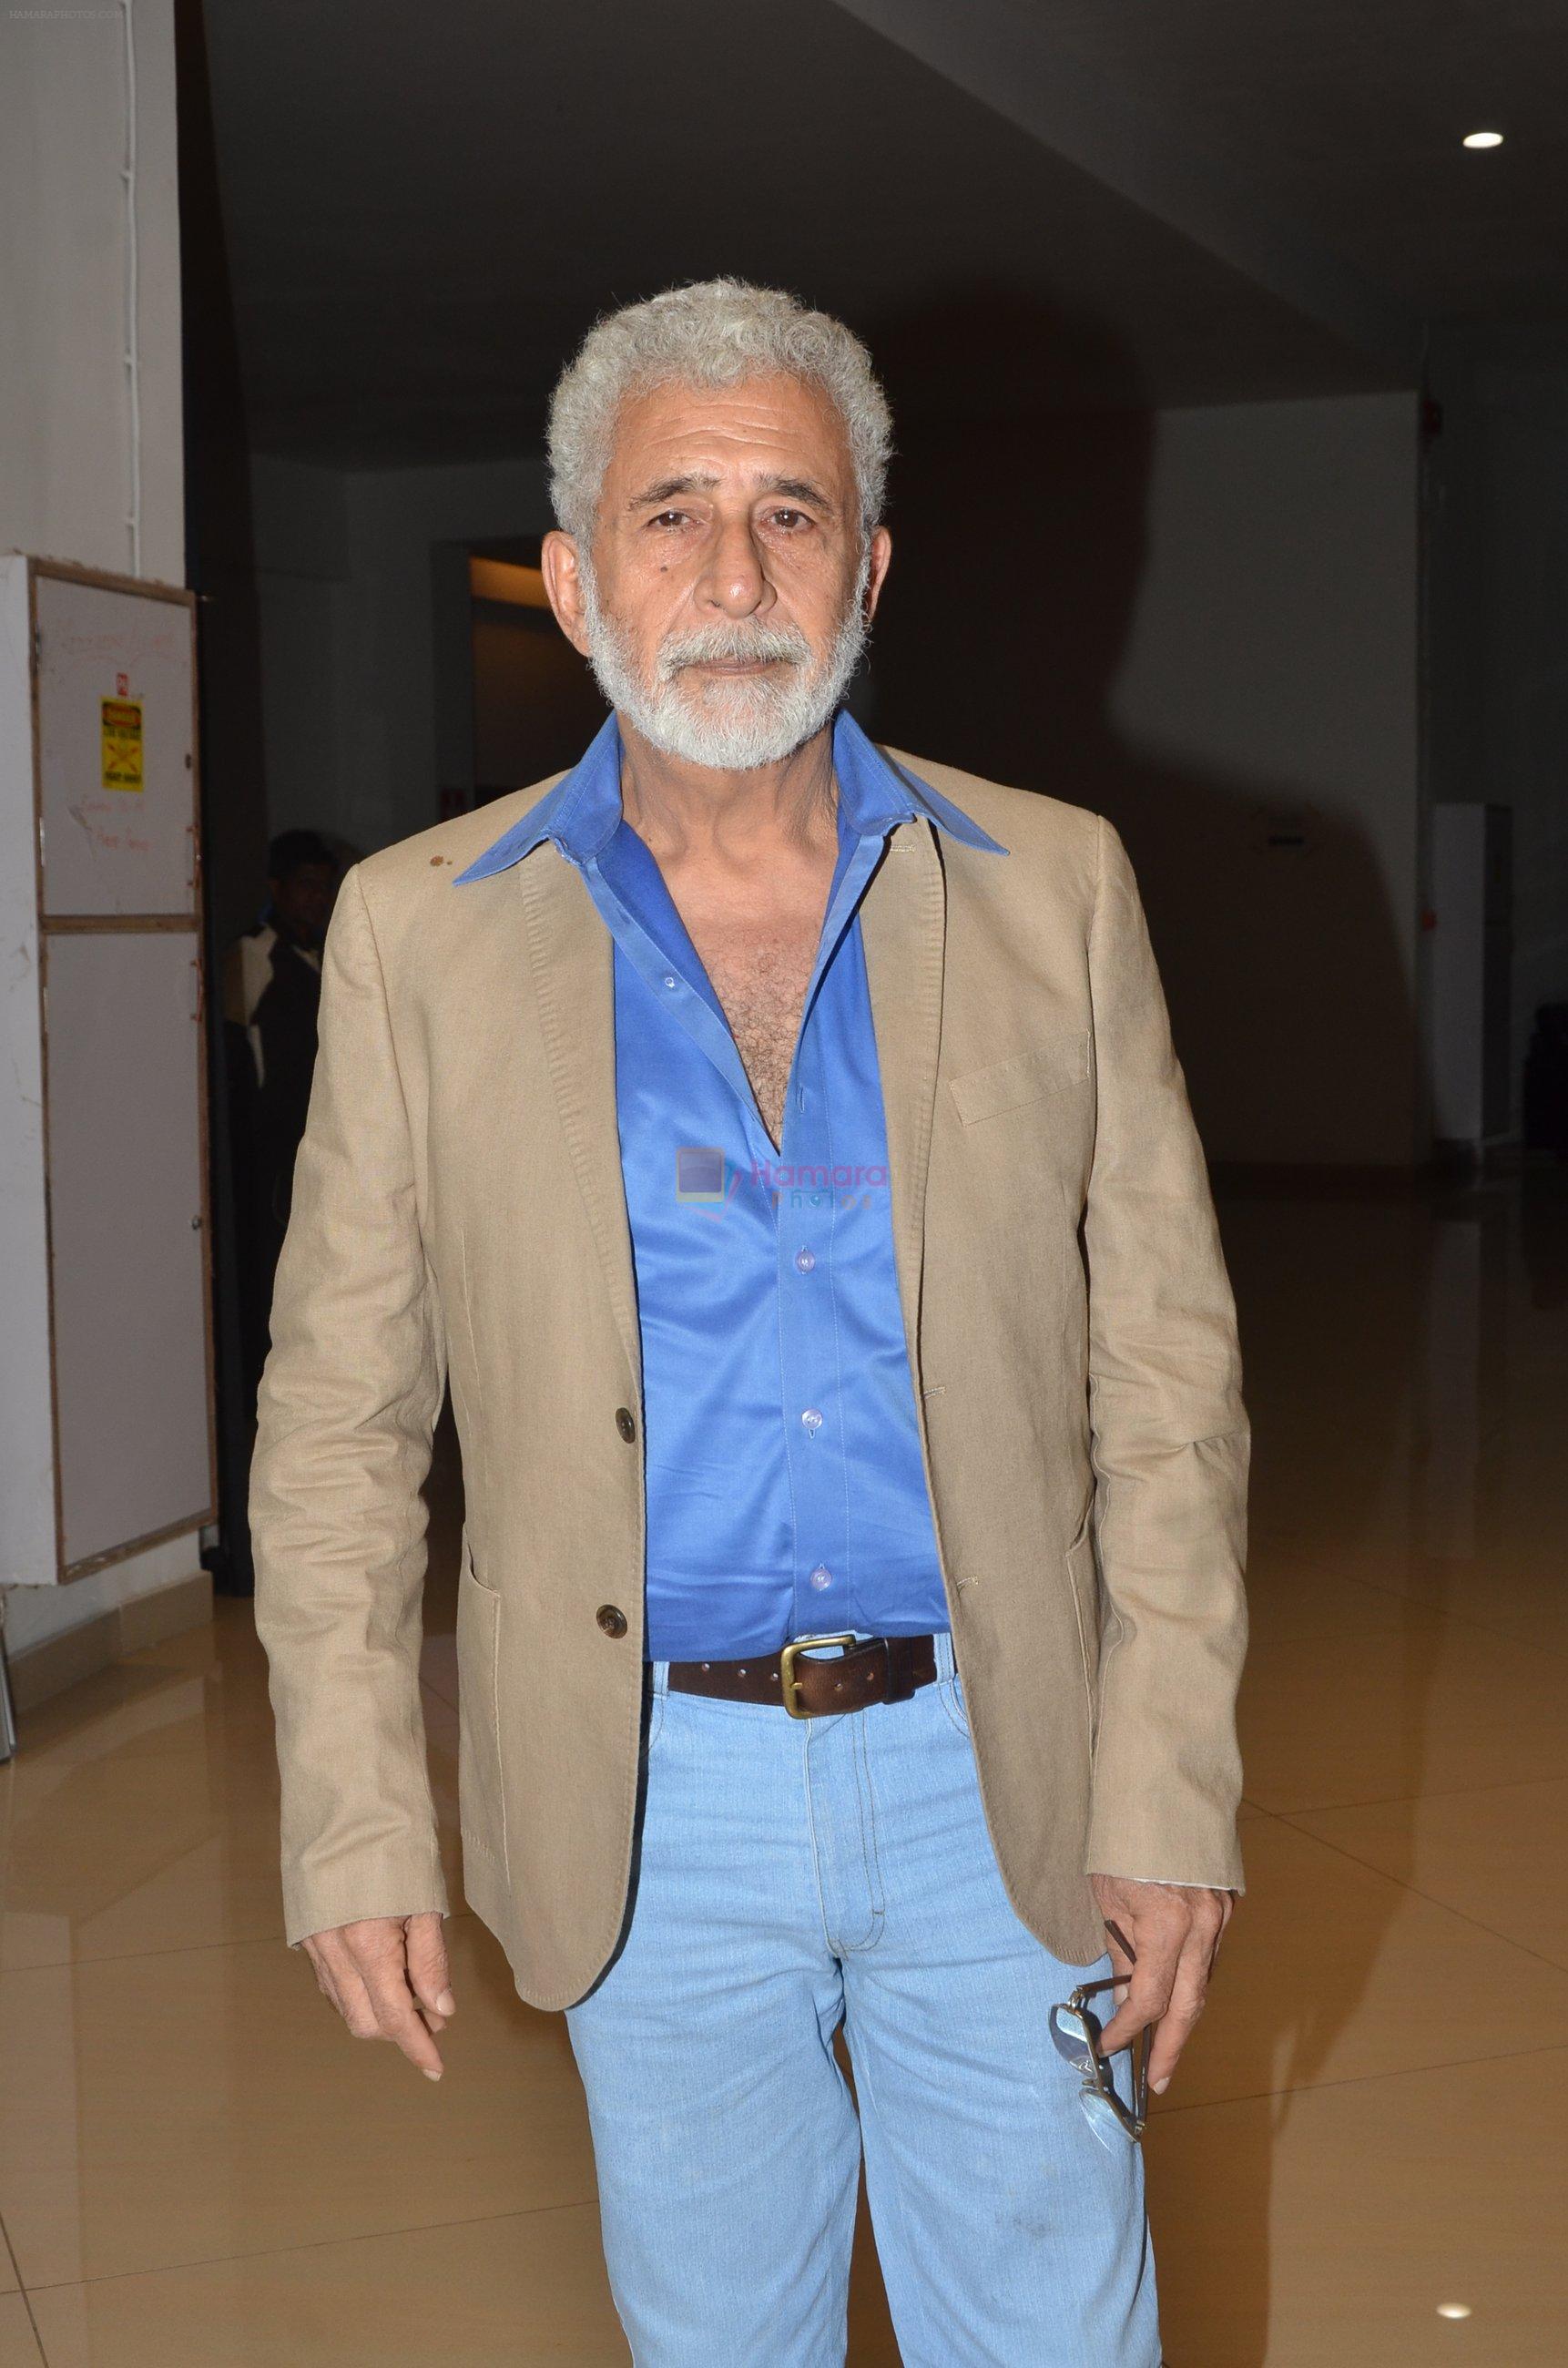 Naseeruddin Shah at Awaiting screening on 5th May 2016